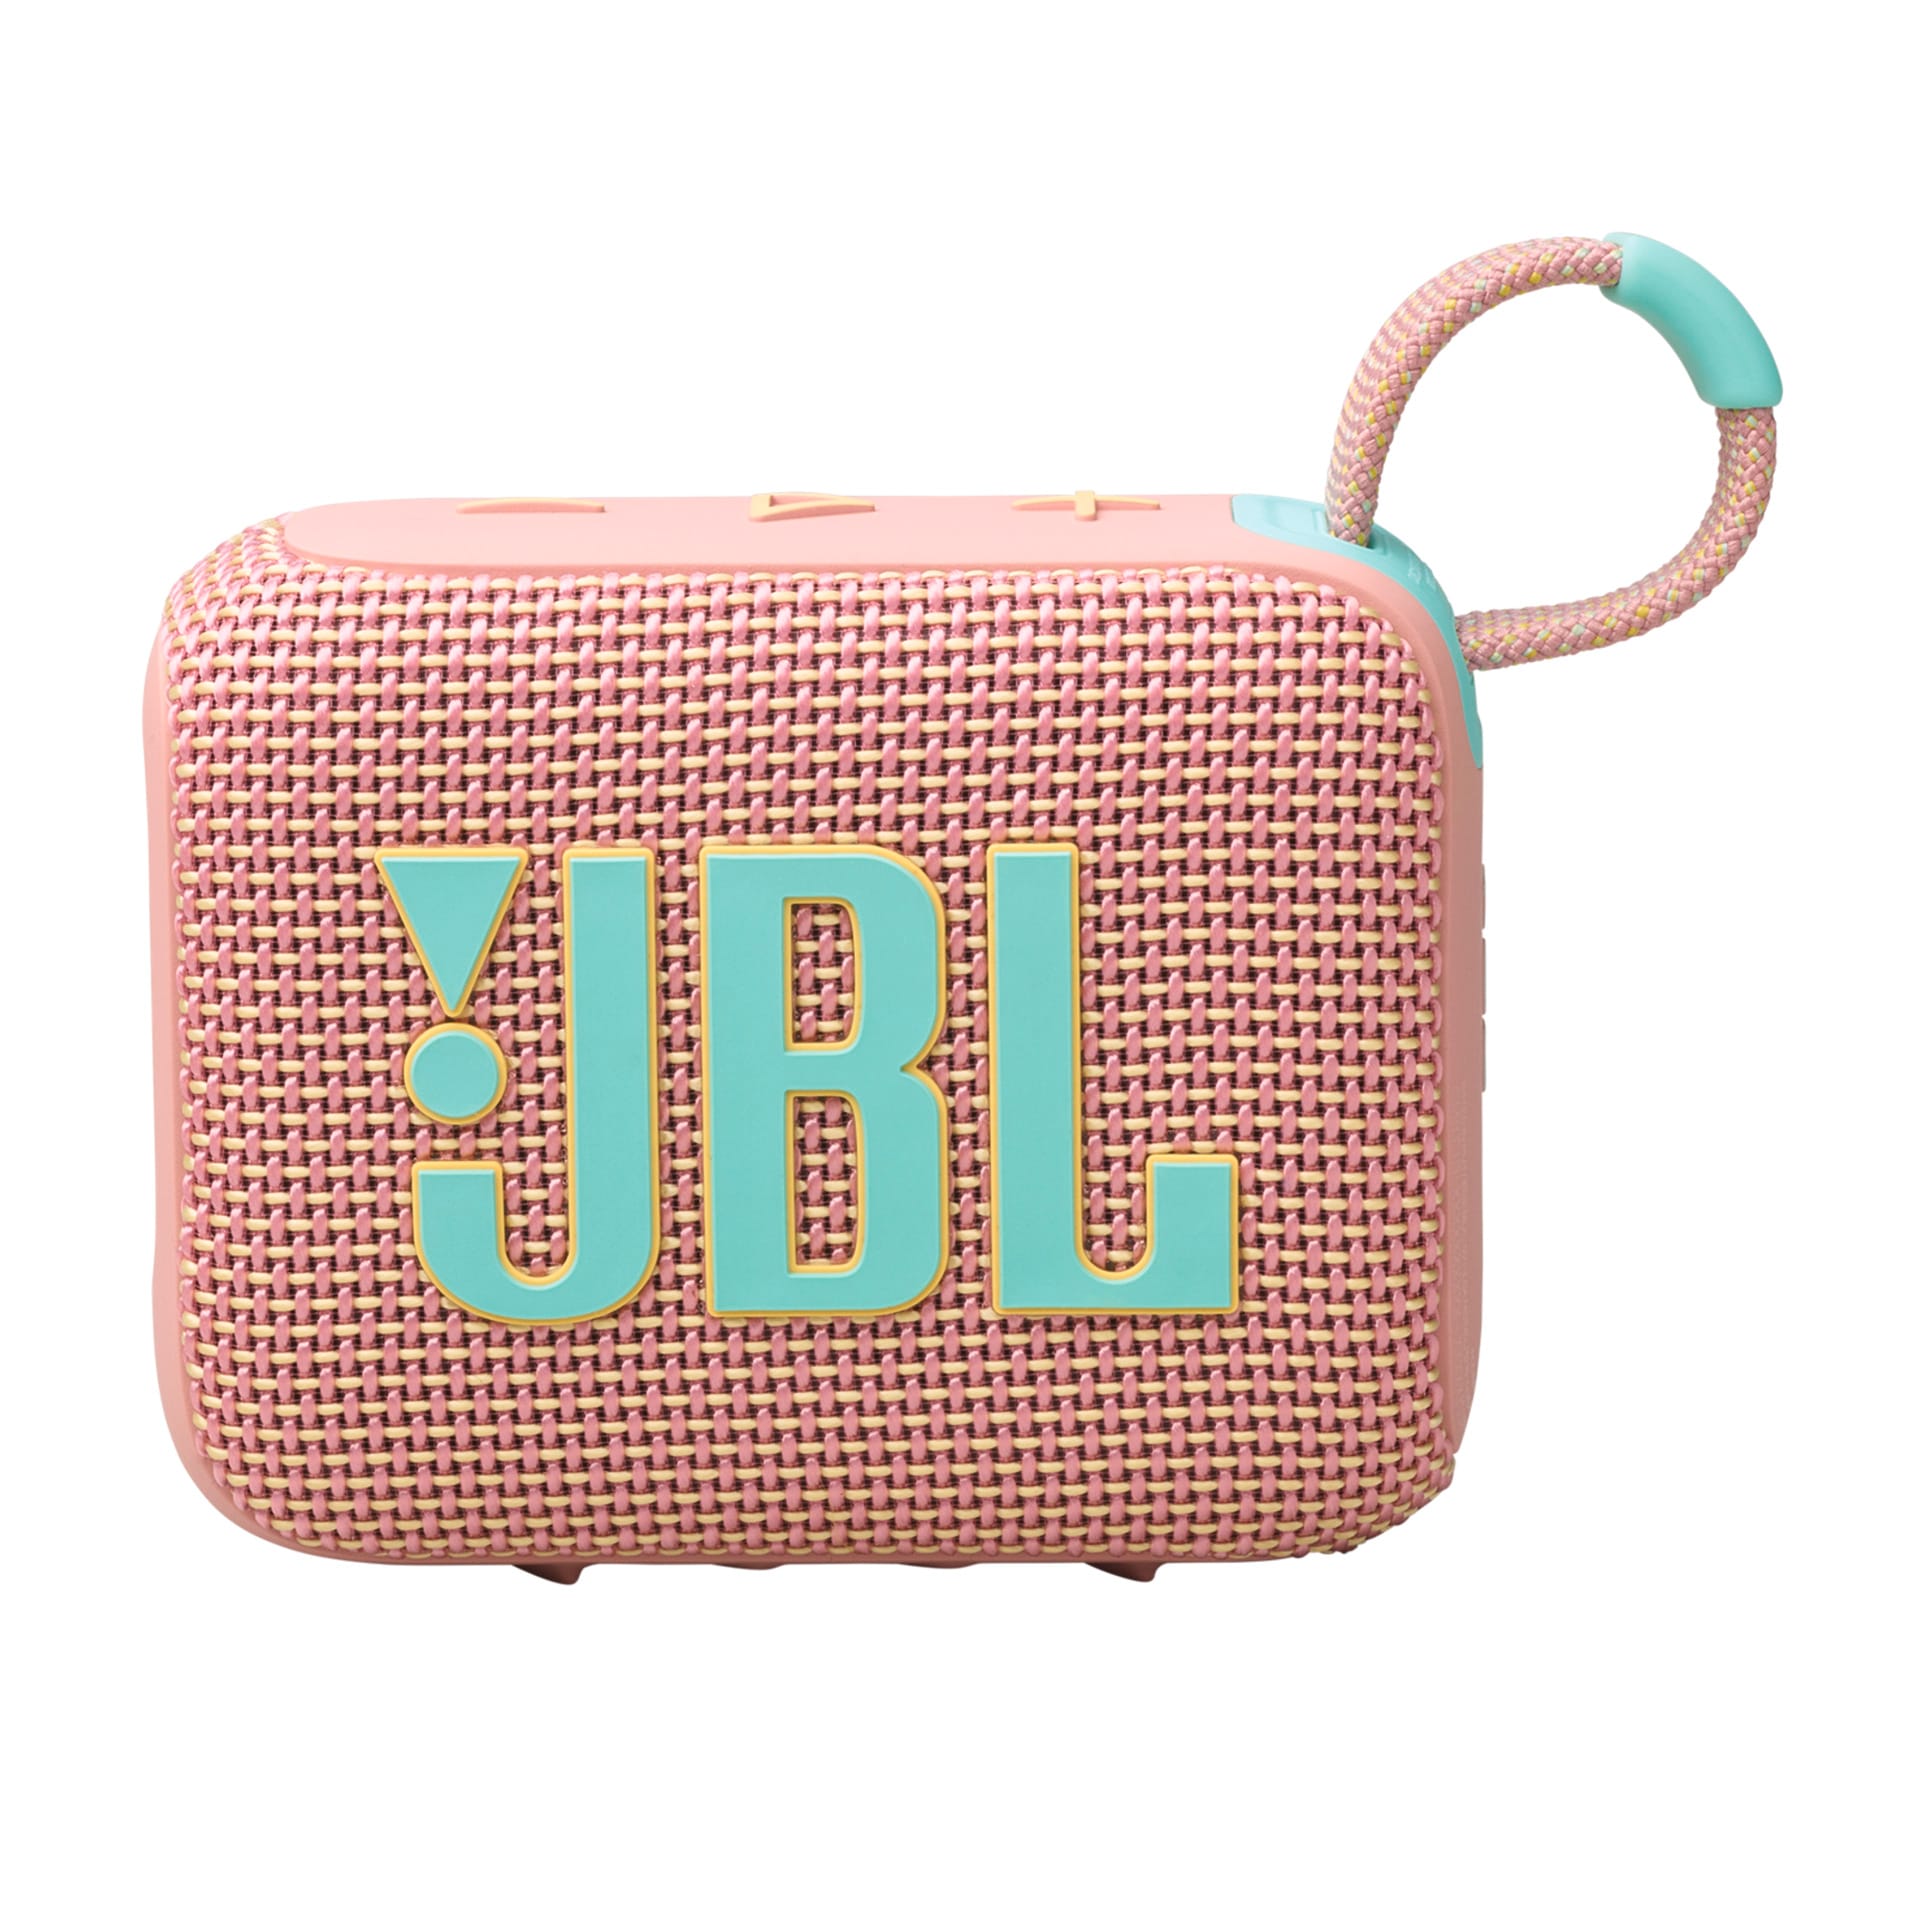 JBL Bluetooth-Lautsprecher »GO 4«